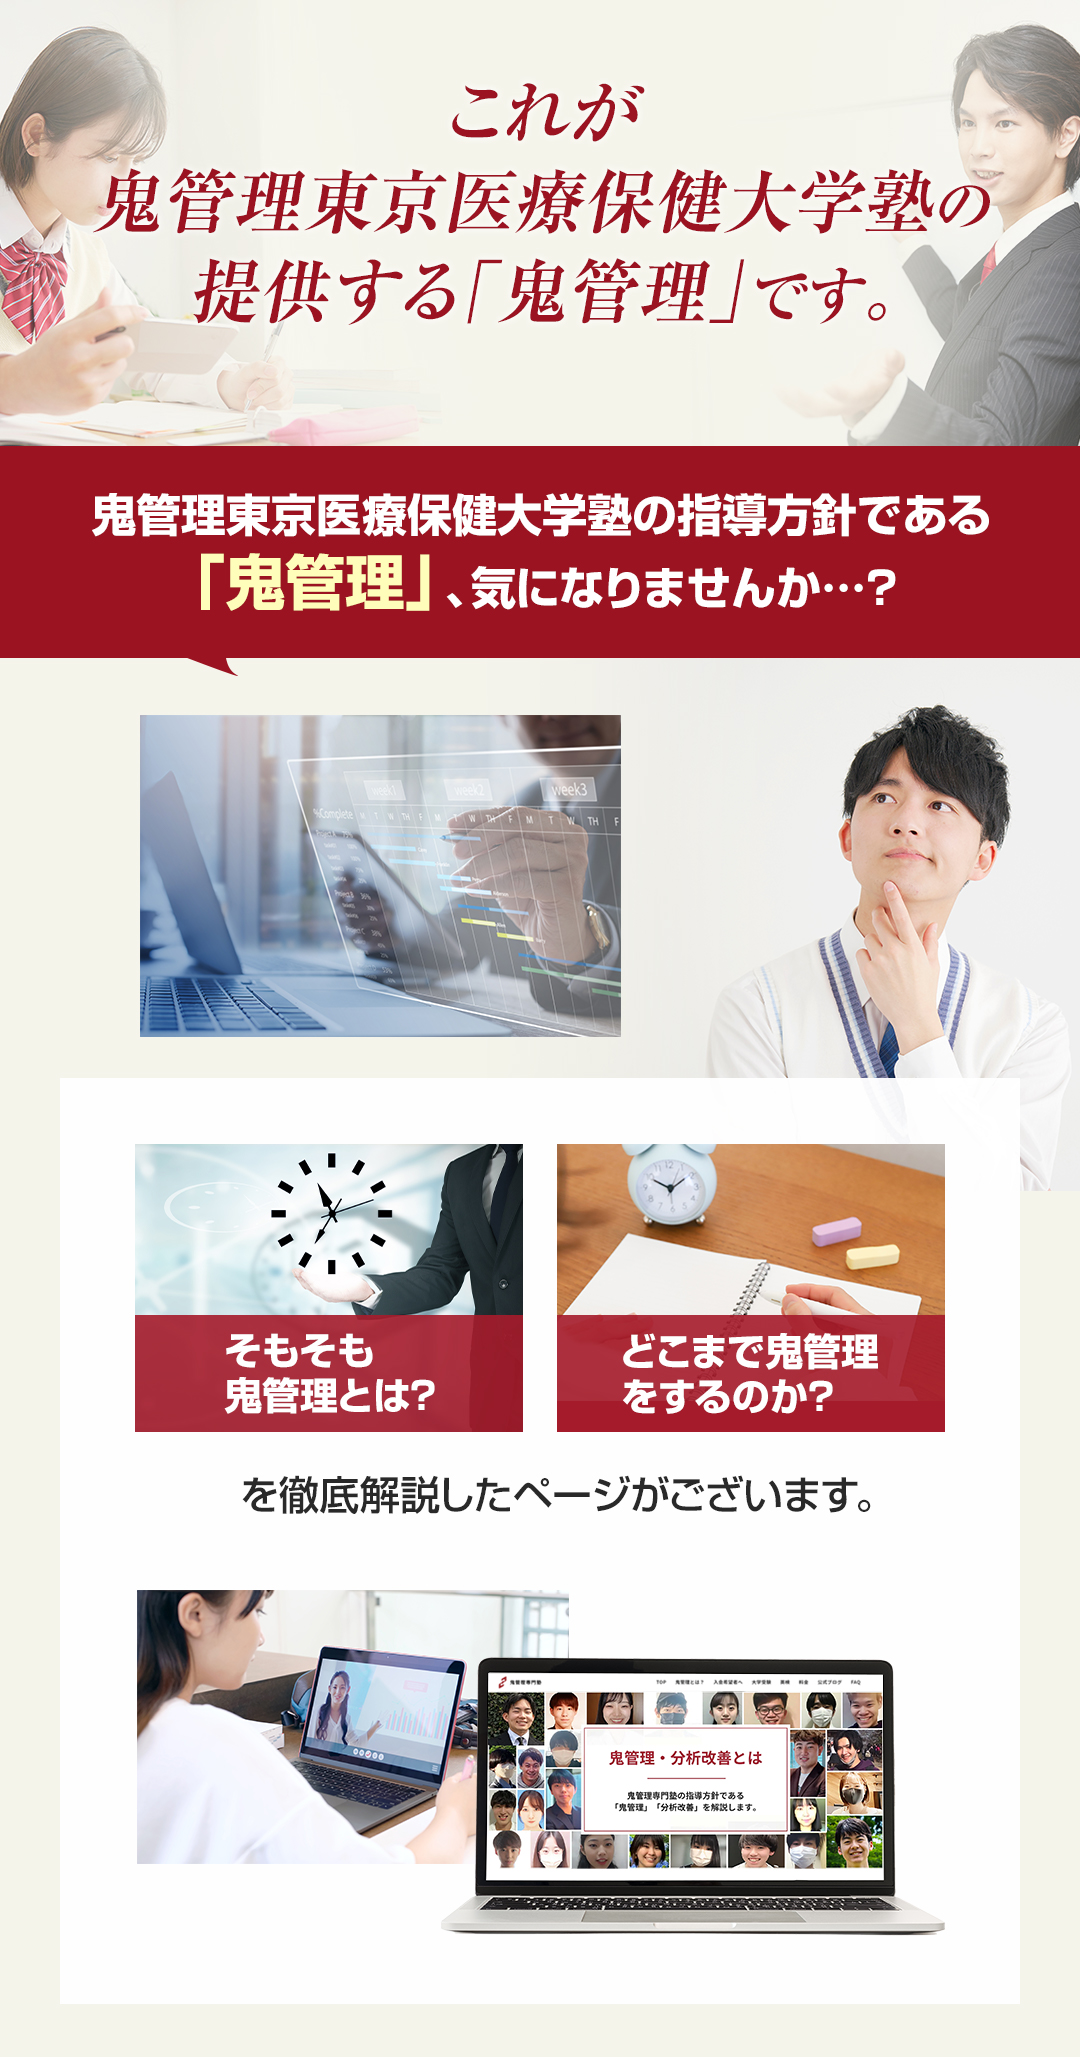 これが鬼管理東京医療保健大学塾の提供する「鬼管理」です